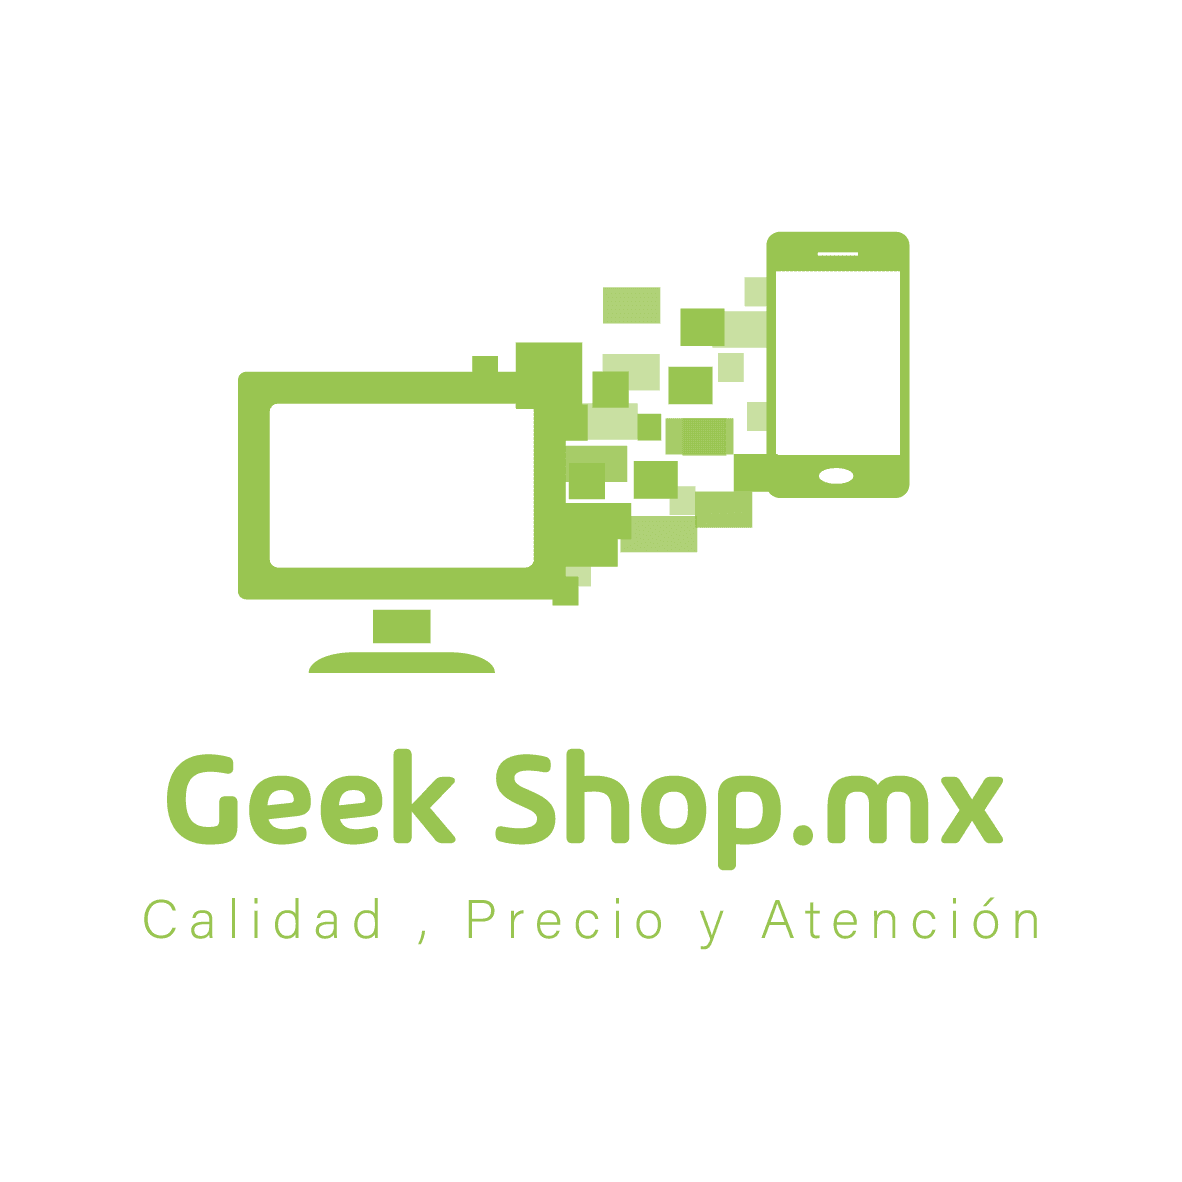 Geek Shop Mx